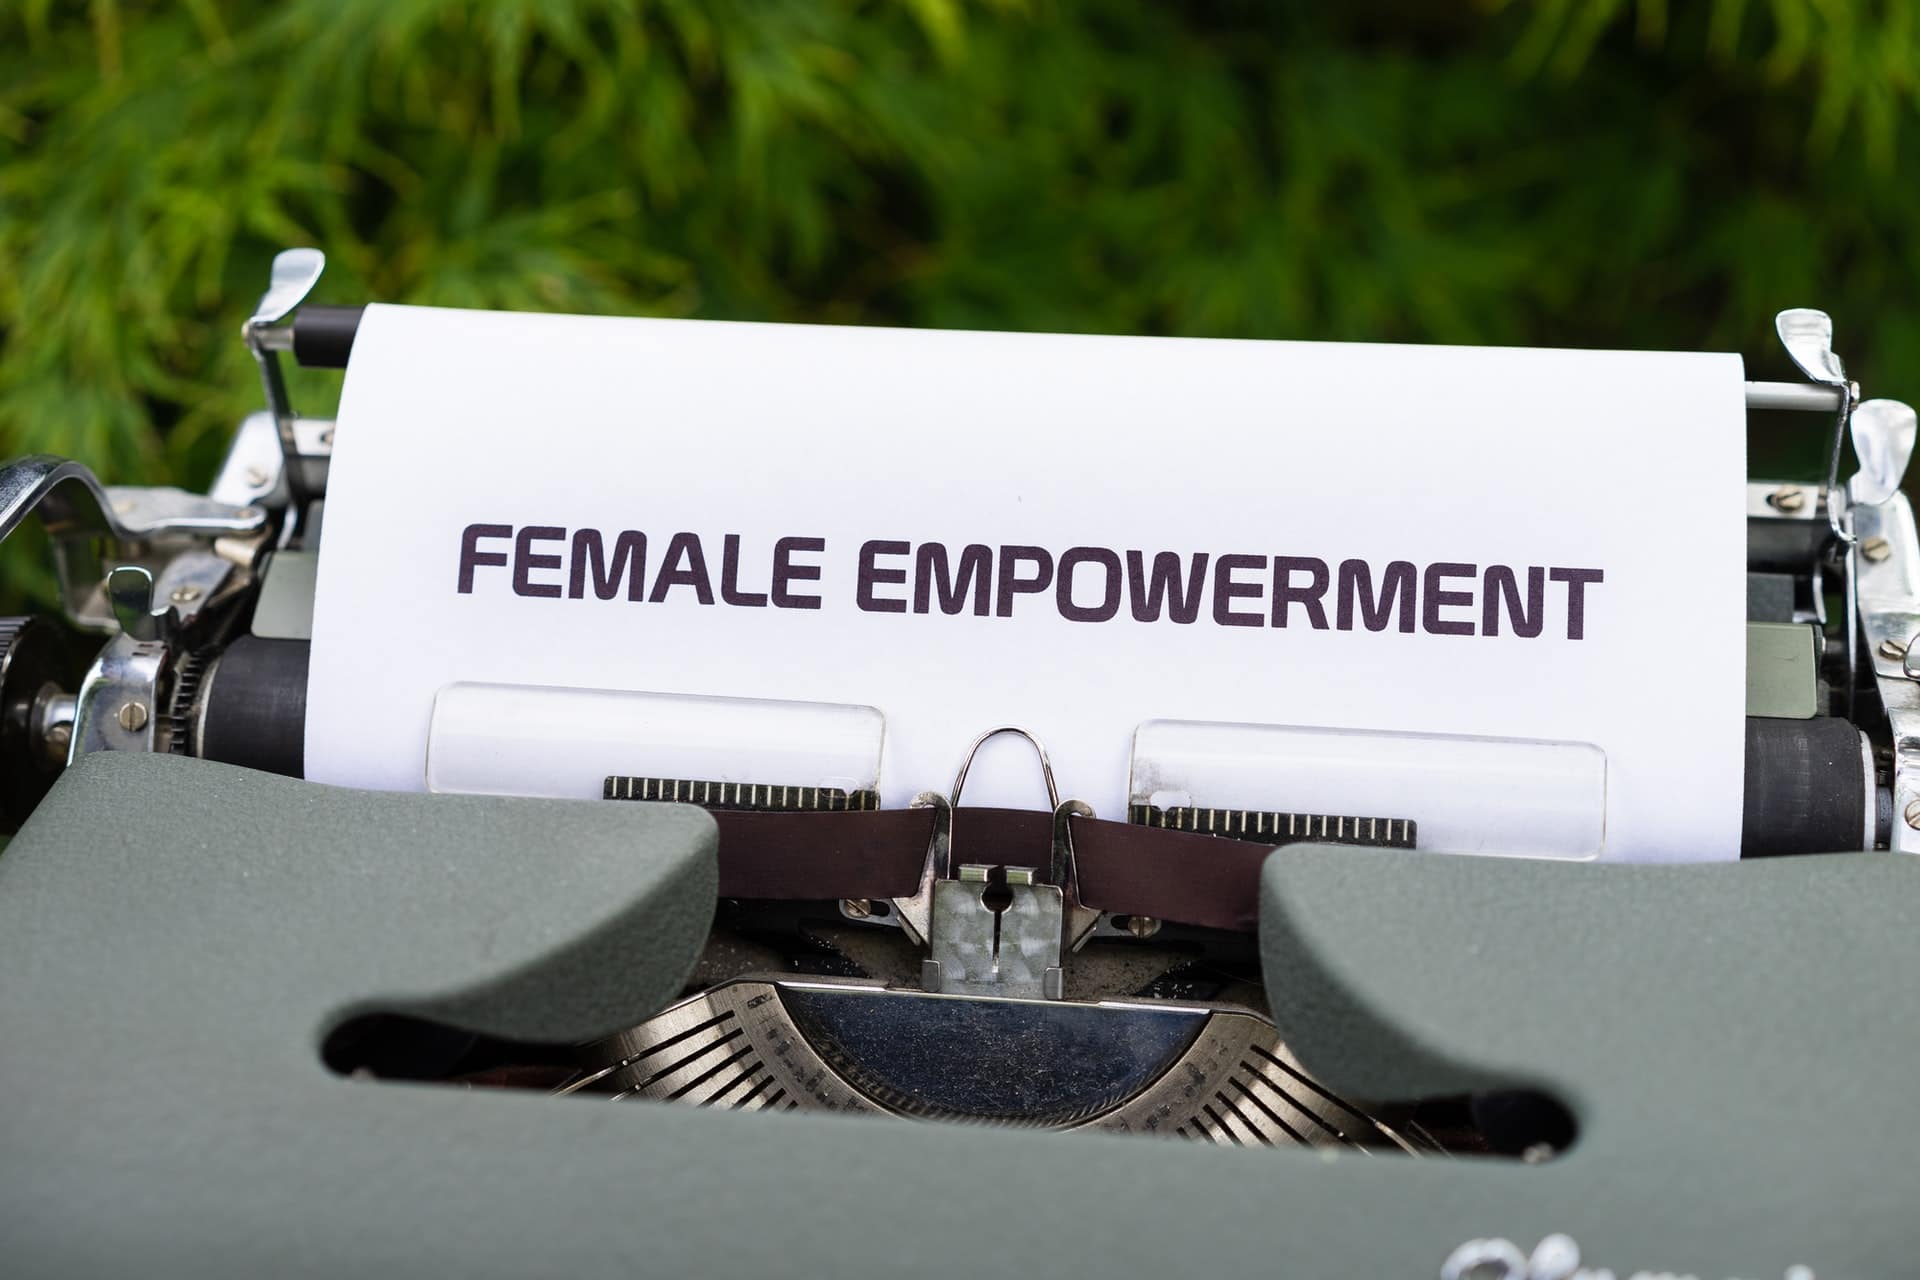 womens empowerment - female empowerment